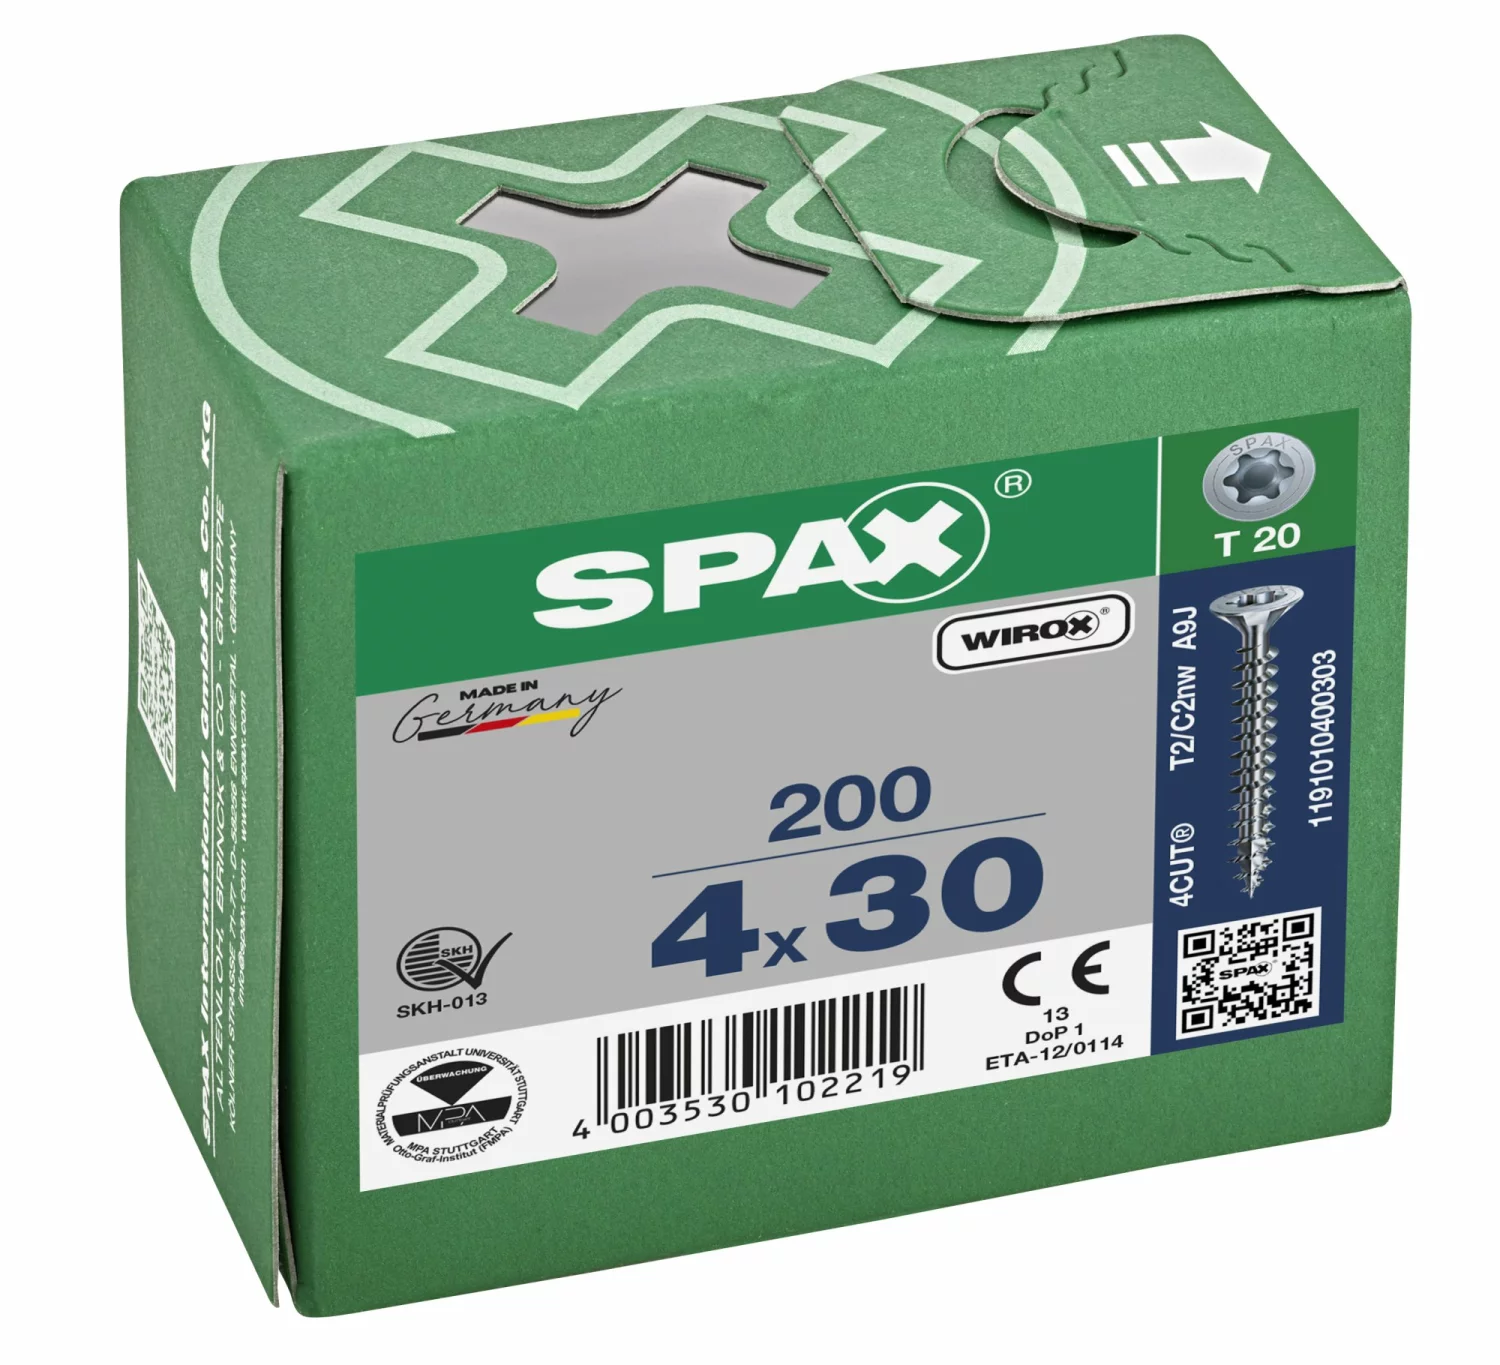 SPAX 1191010400303 - Vis universelle, 4 x 30 mm, 200 pièces, Tête centrante, Tête fraisée, T-STAR plus T20, 4CUT, WIROX-image